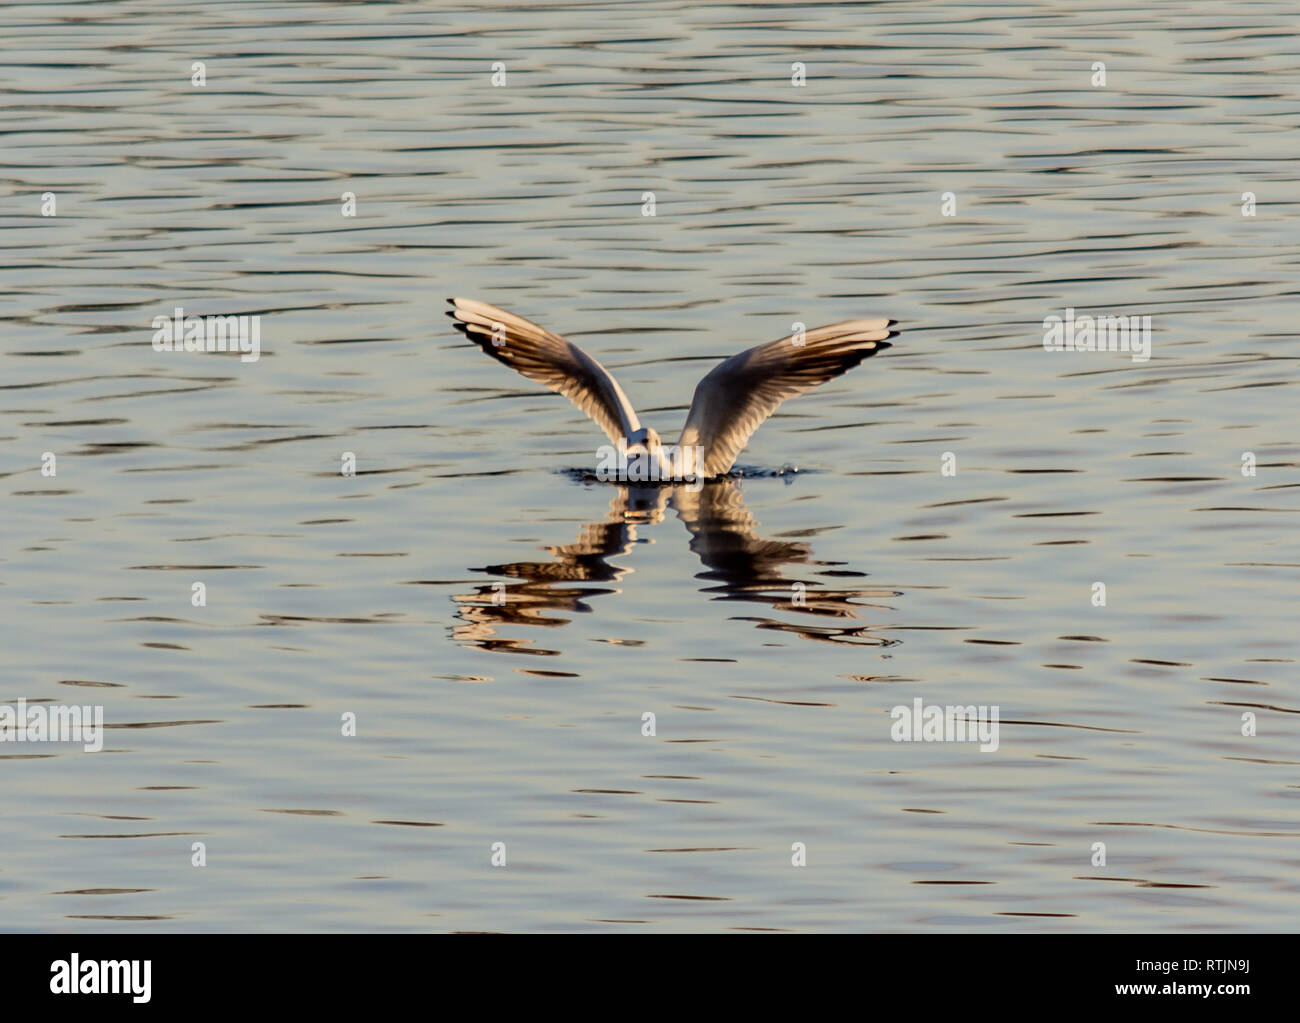 Una terna riflettendo in acqua con le ali stese Foto Stock